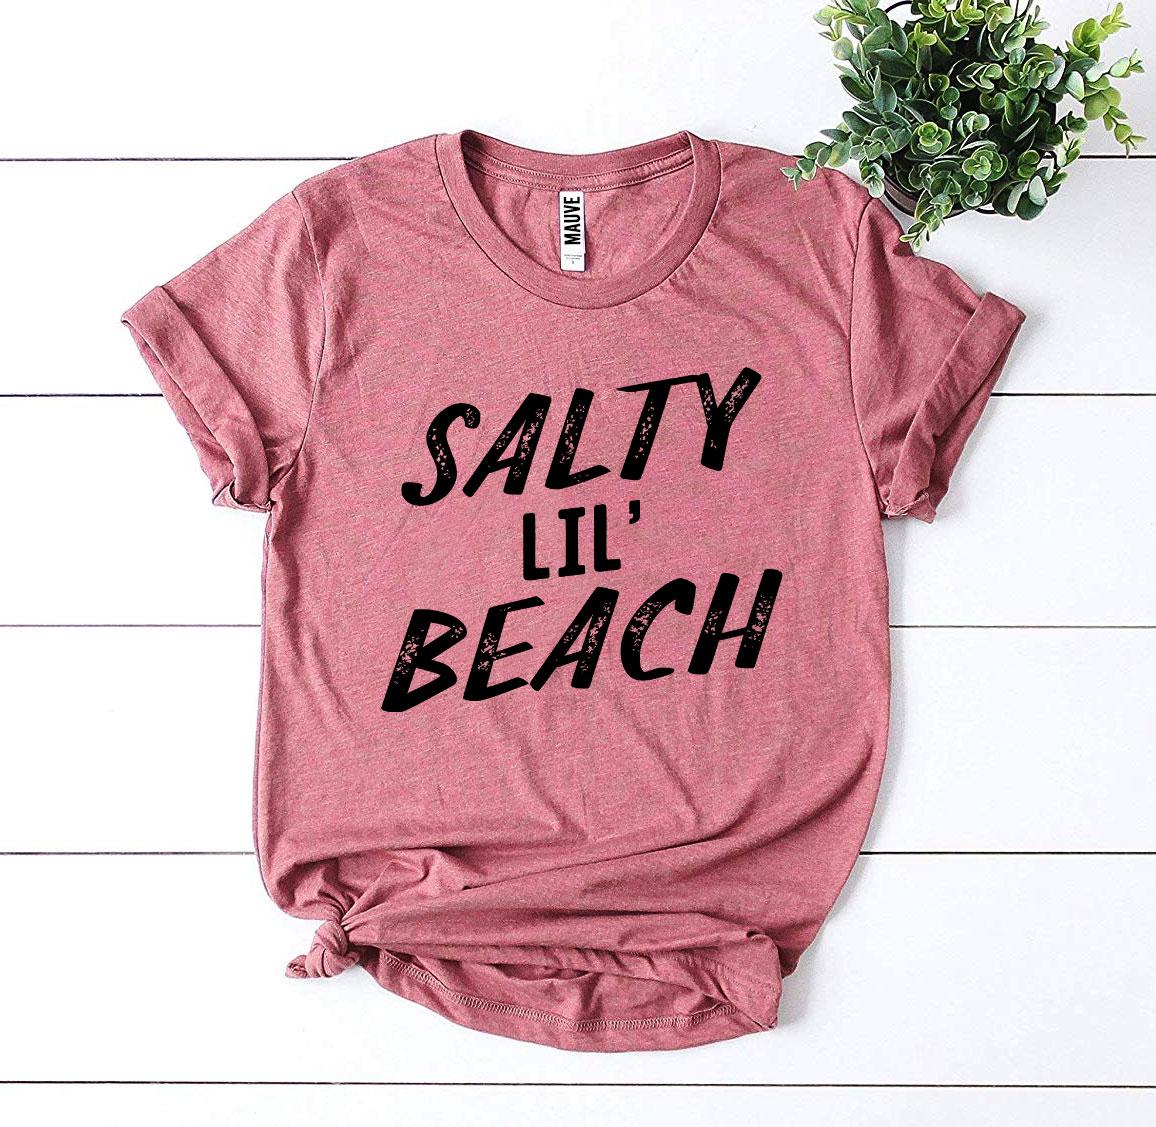 Salty Lil’ Beach Tee